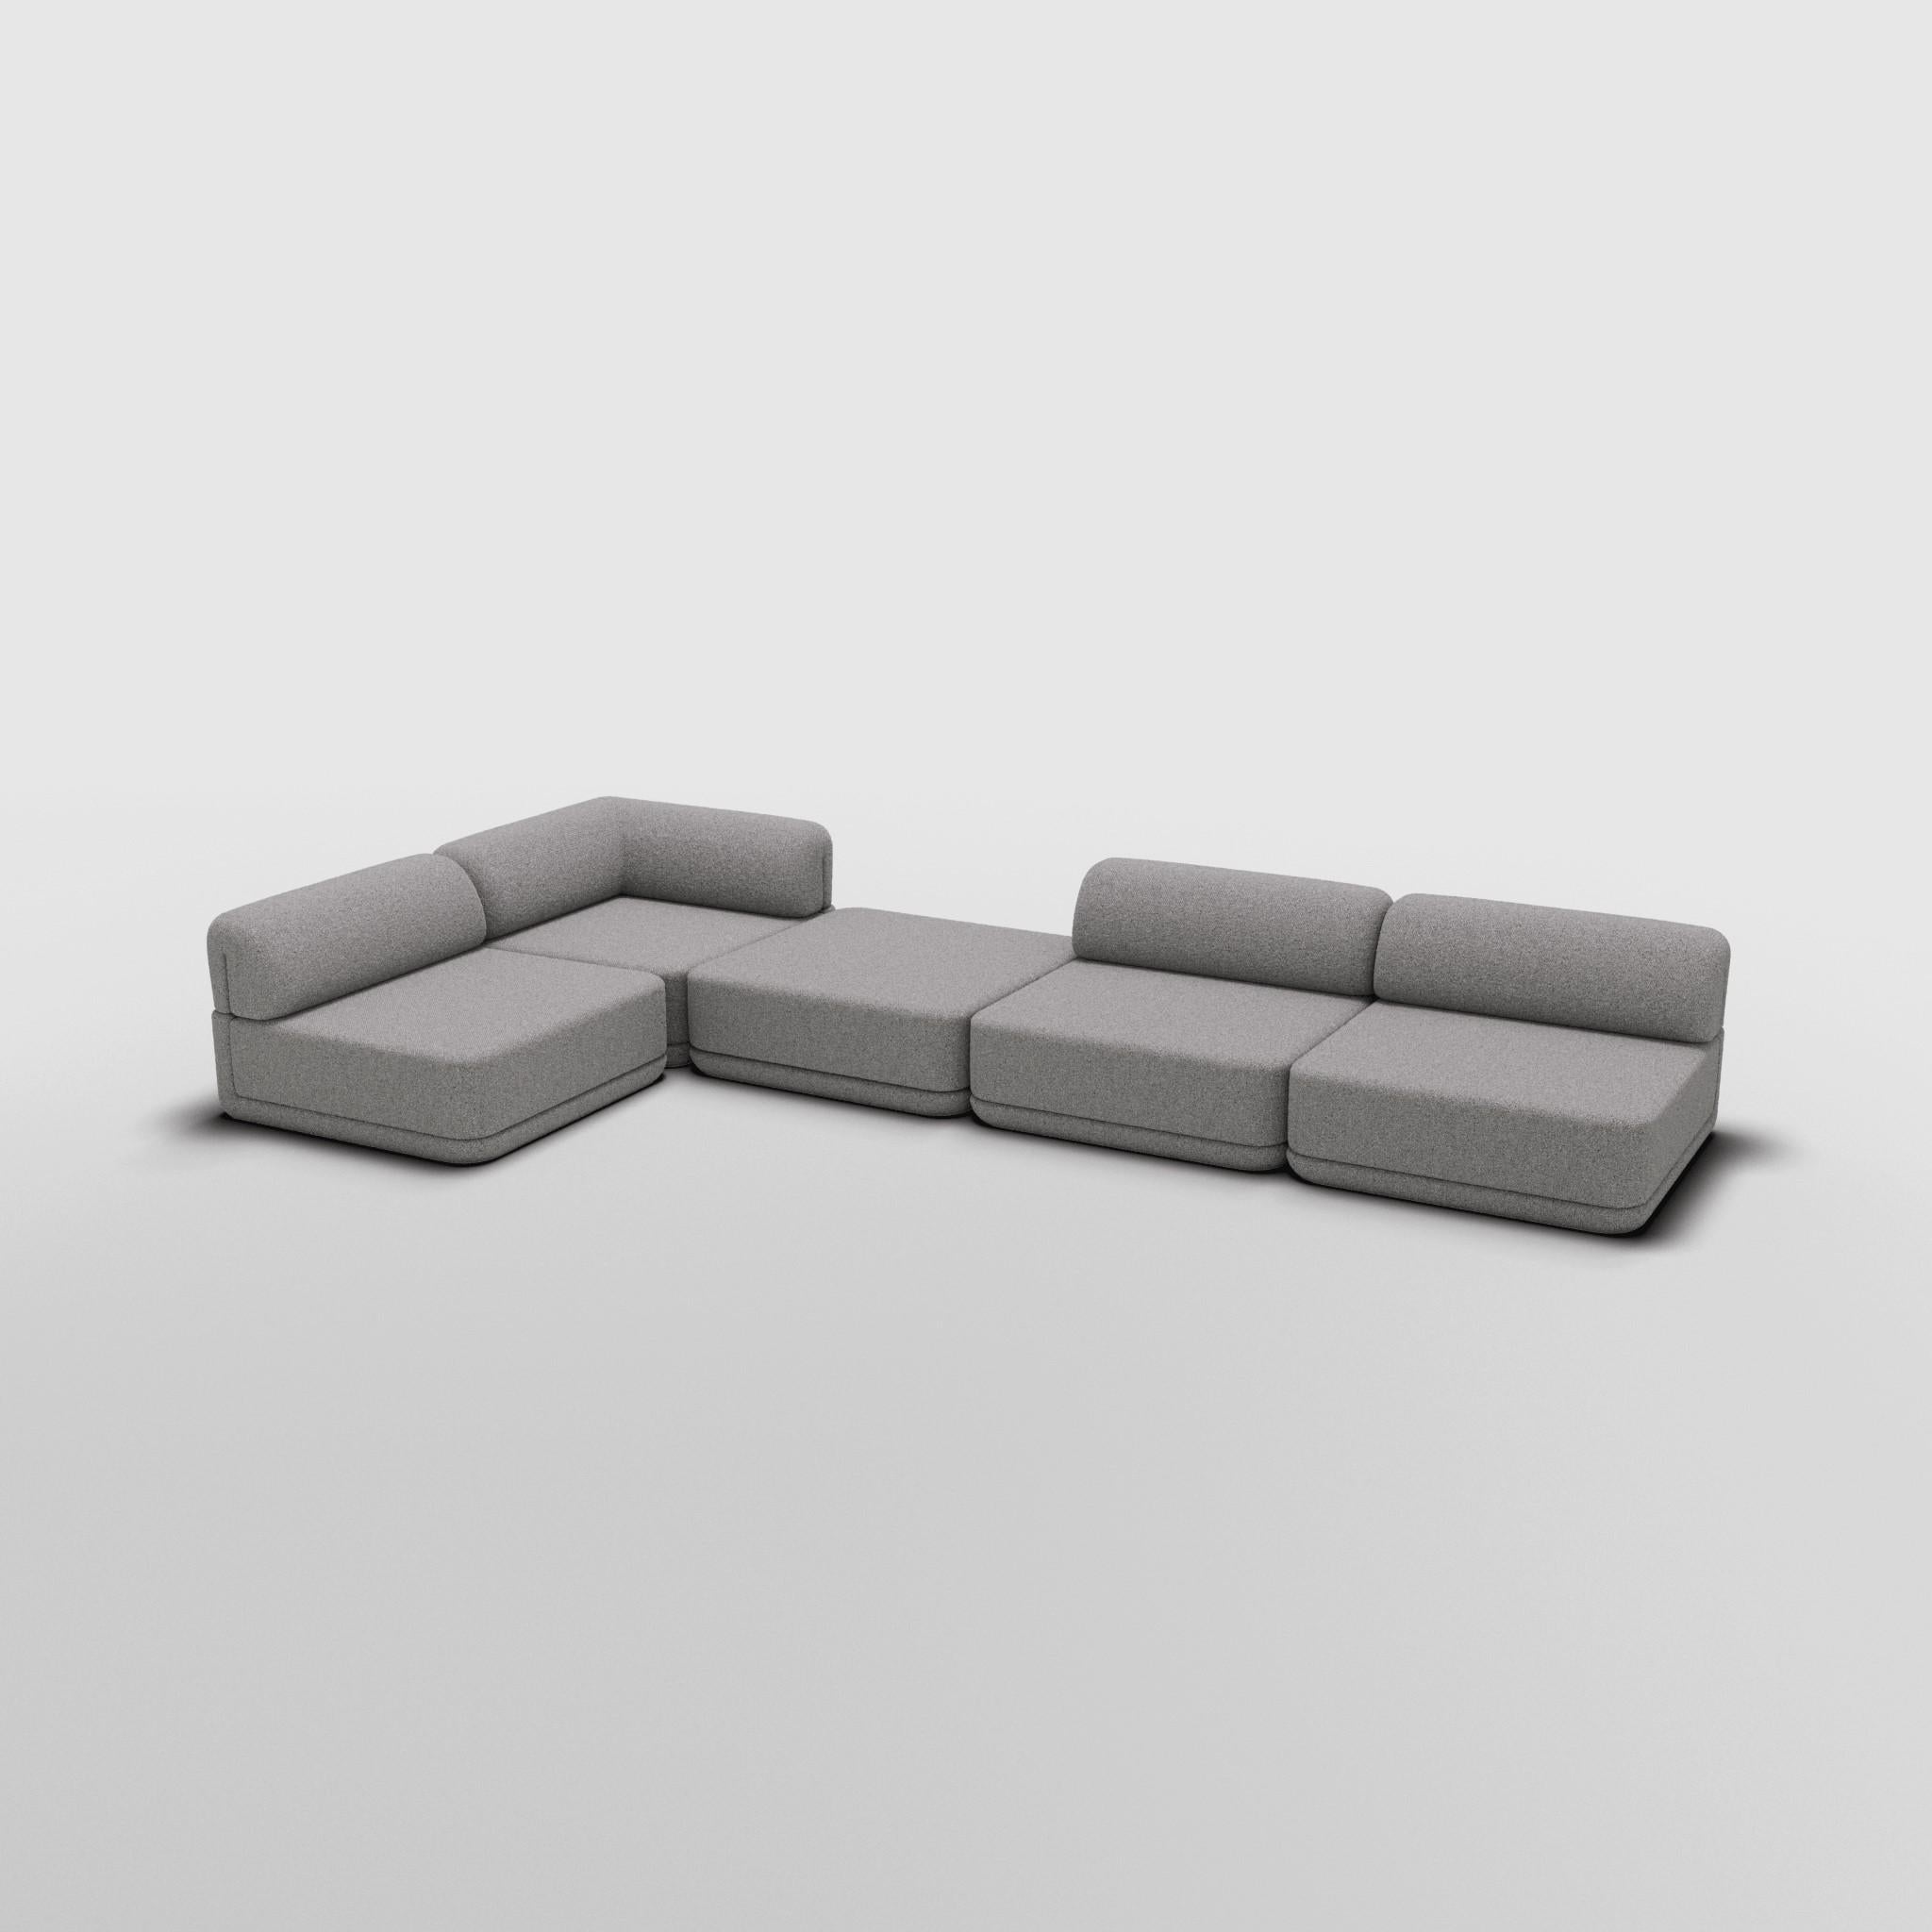 Coin Lounge Mix Sectional - Inspiré par les meubles de luxe italiens des années 70

Découvrez le canapé Cube, où l'art rencontre l'adaptabilité. Son design sculptural et son confort personnalisable créent des possibilités infinies pour votre espace